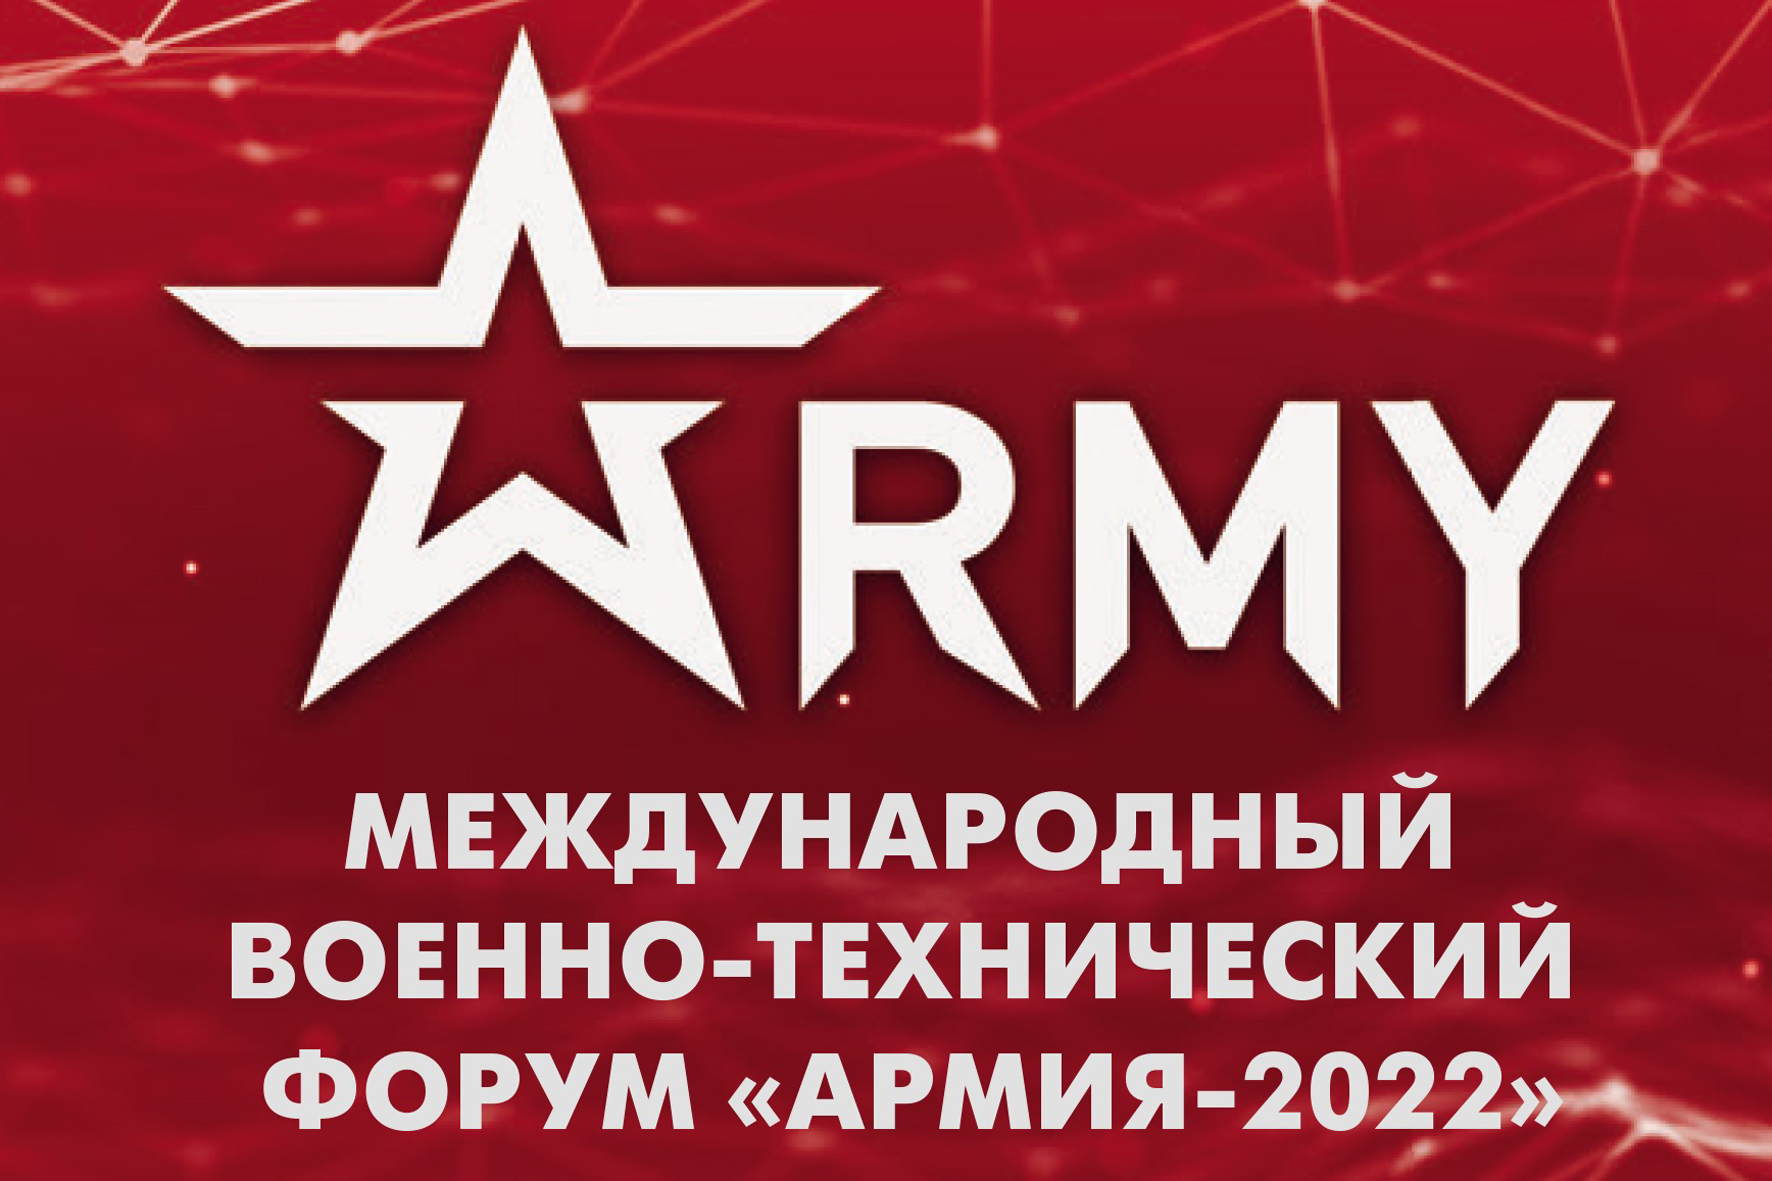 Армия 2022 форум. Международный военно-технический форум армия-2022. Международный военно-технический форум 2022. Форум армия. Международный форум армия 2022.